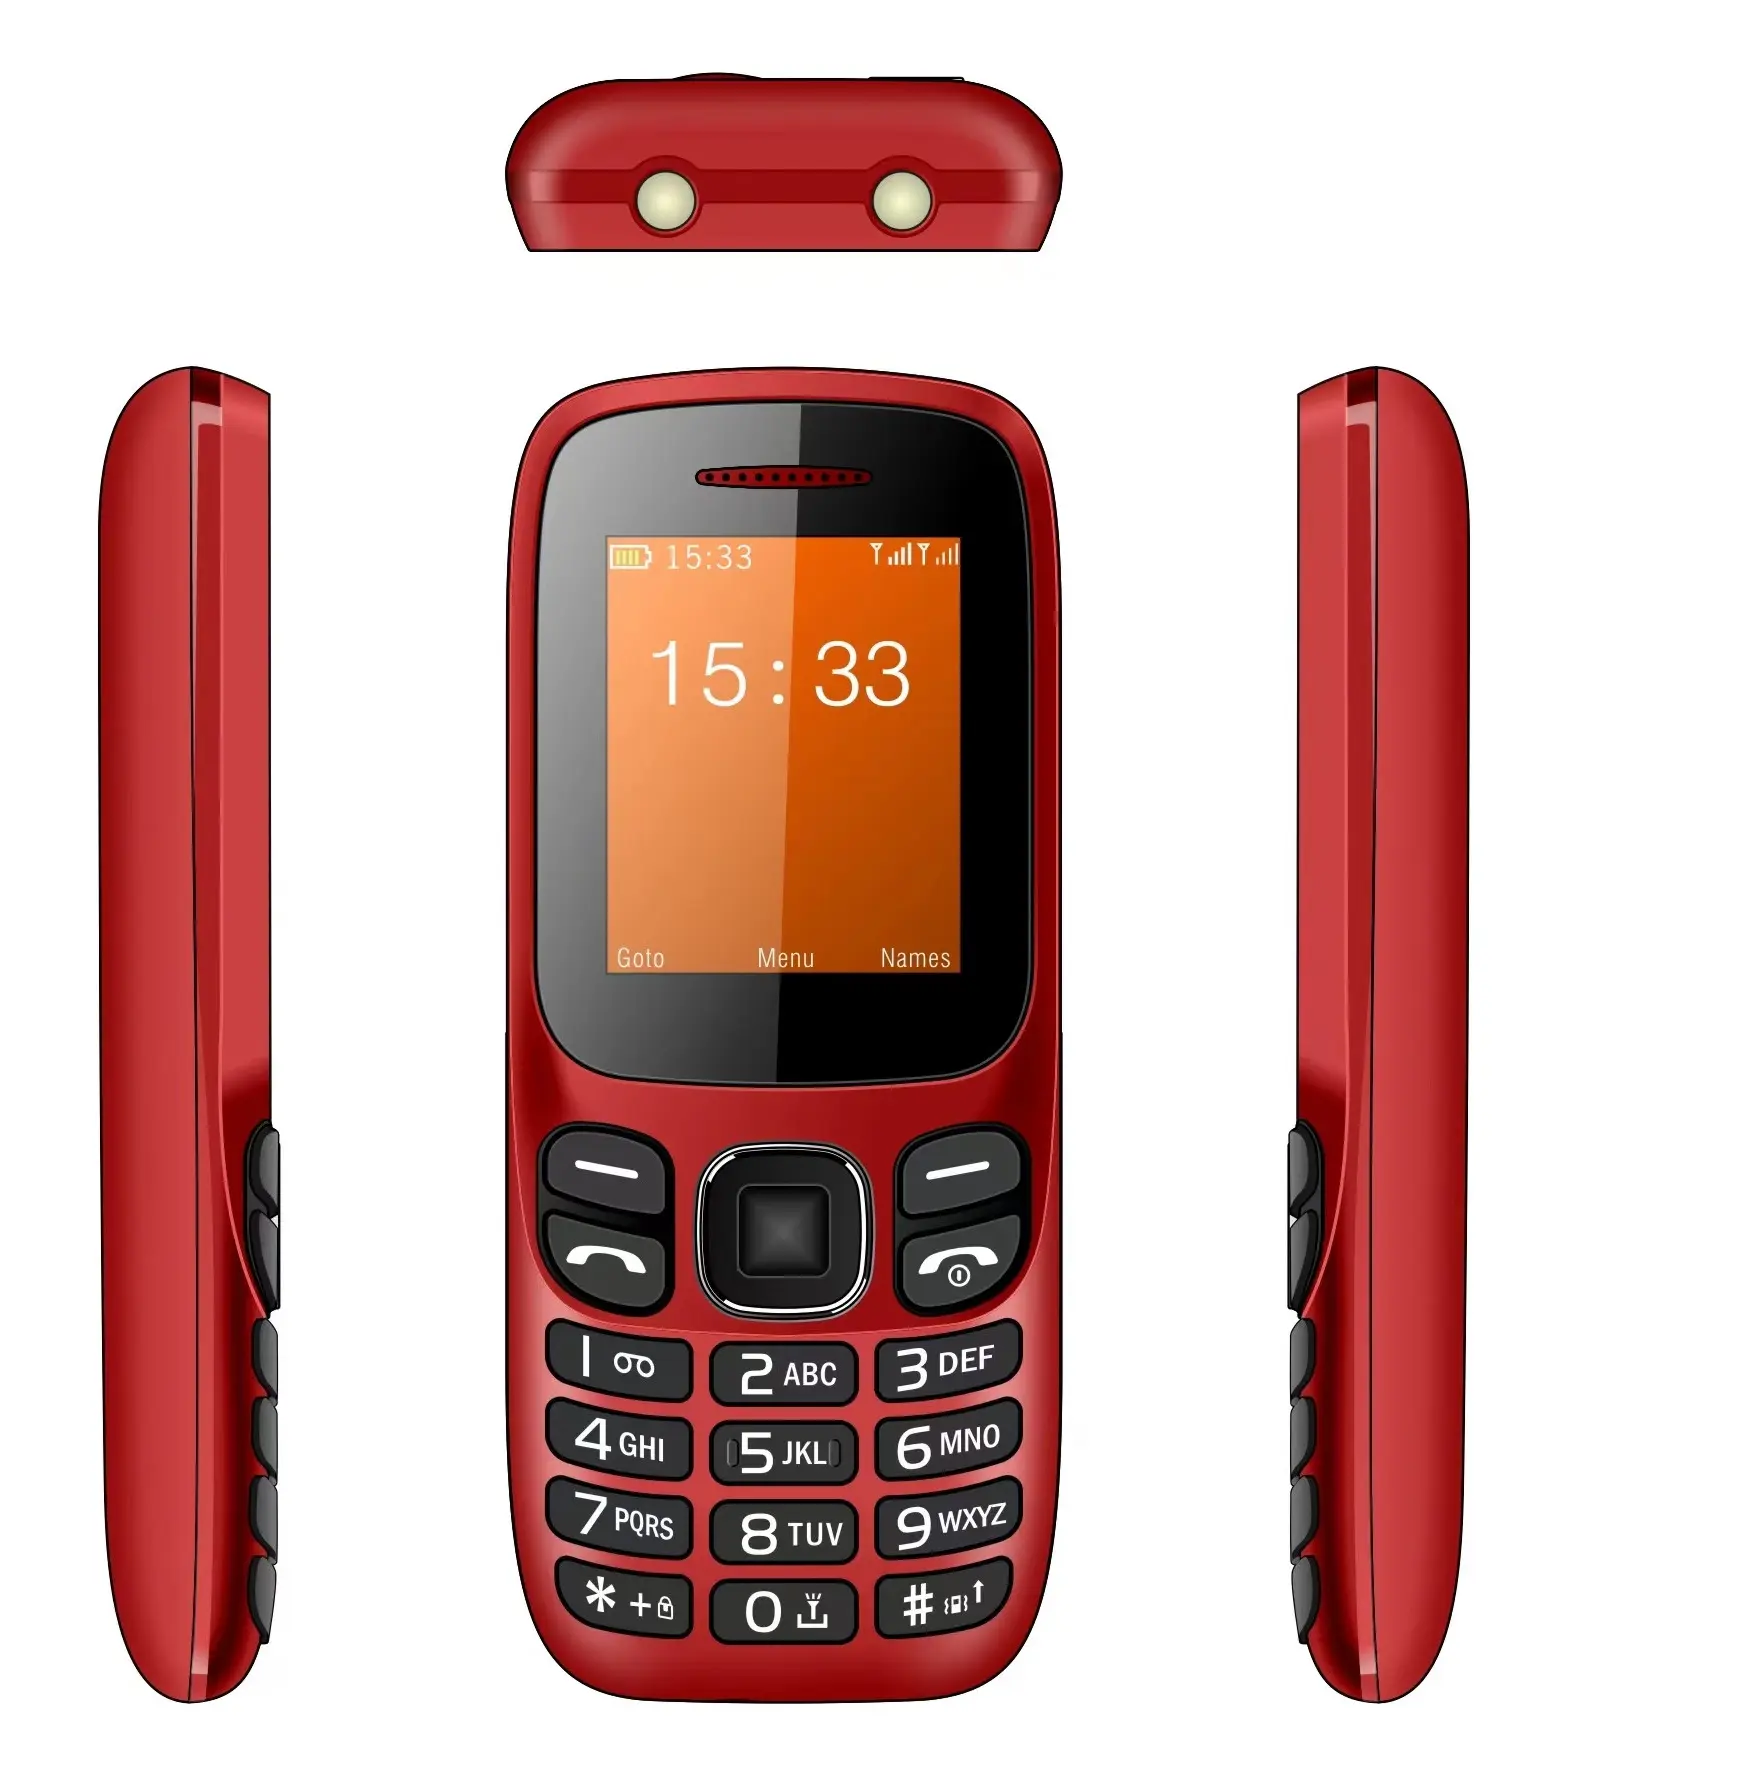 هاتف محمول ، هاتف محمول, هاتف محمول ماركة (سيلولار بلو) من أمريكا الجنوبية يتميز بشريحتين وخاصية whatsapp وfacebook و GSM